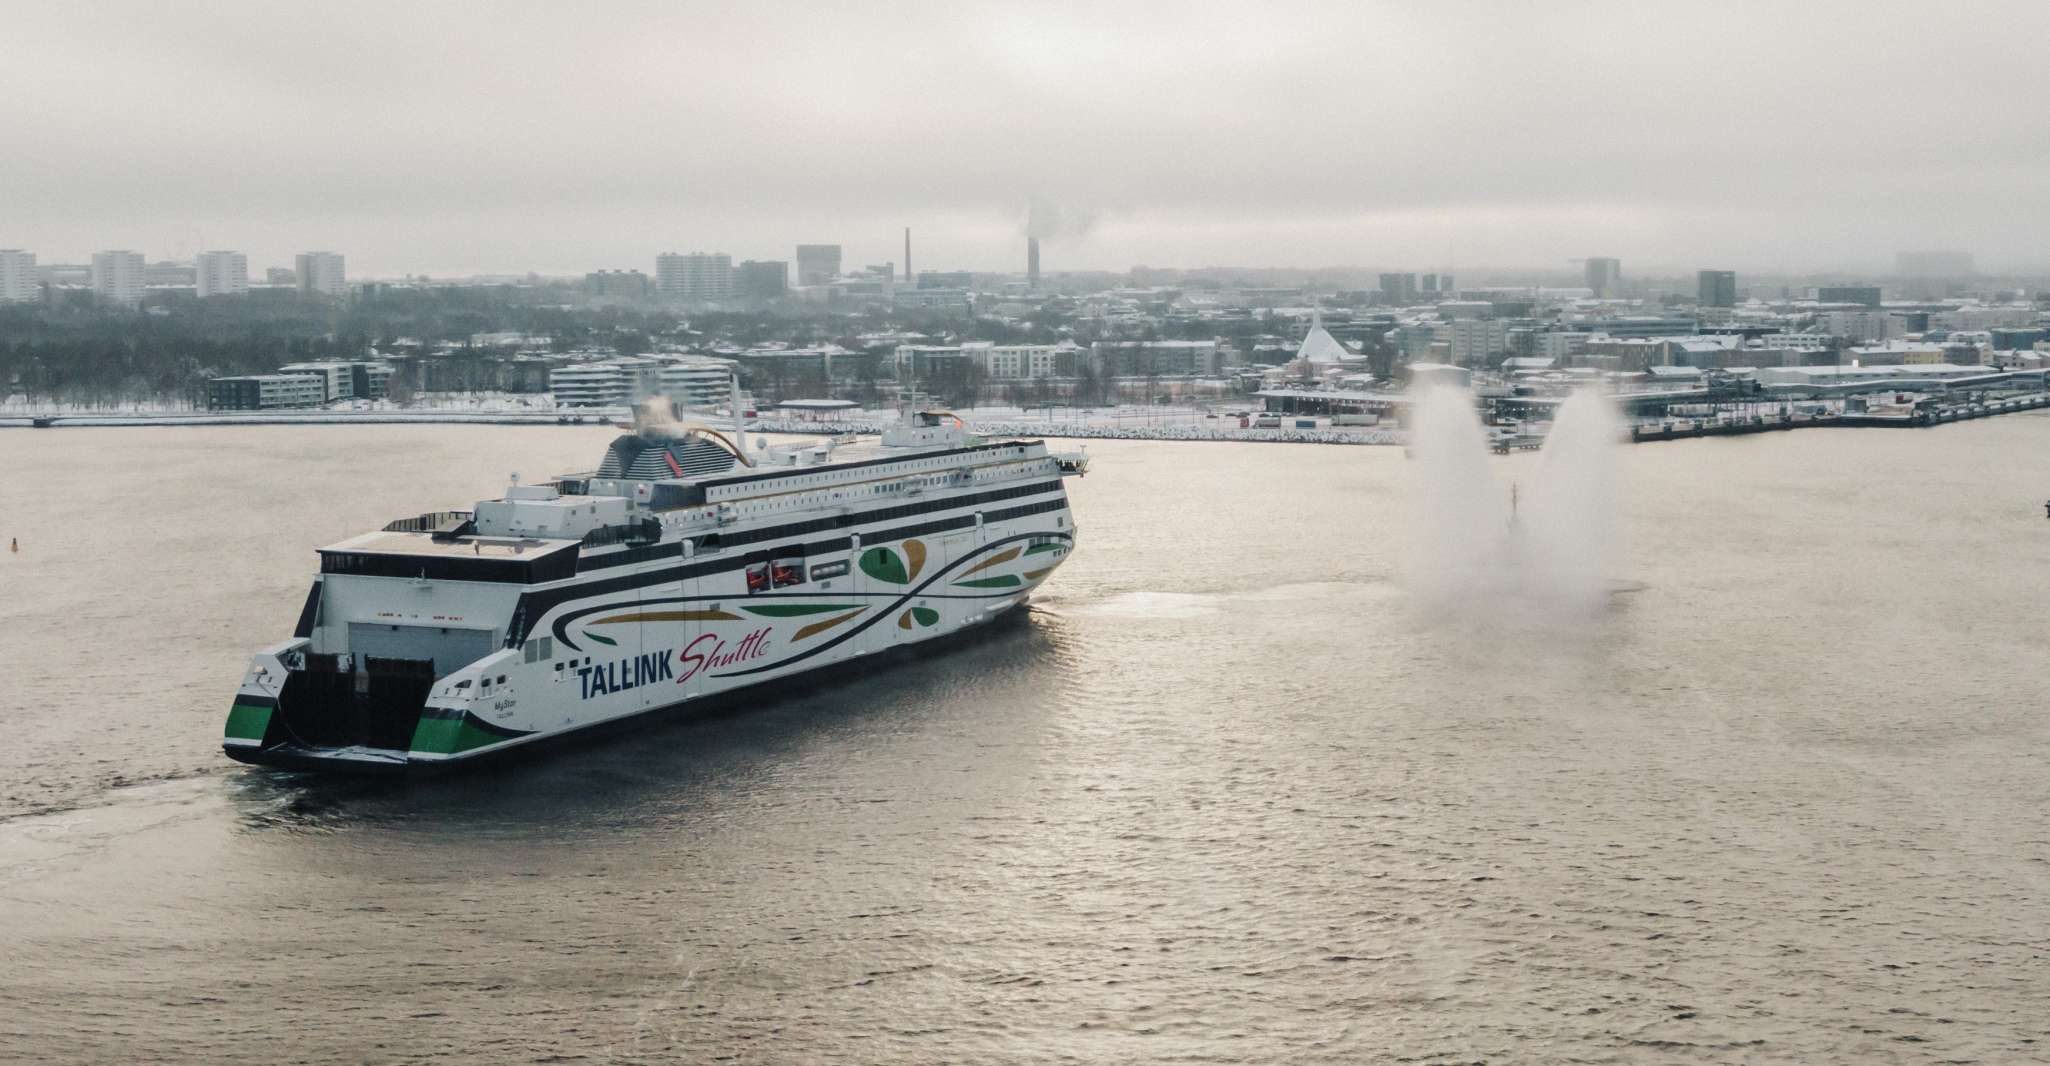 From Tallinn, Return Day Trip Ferry Transfer to Helsinki - Housity